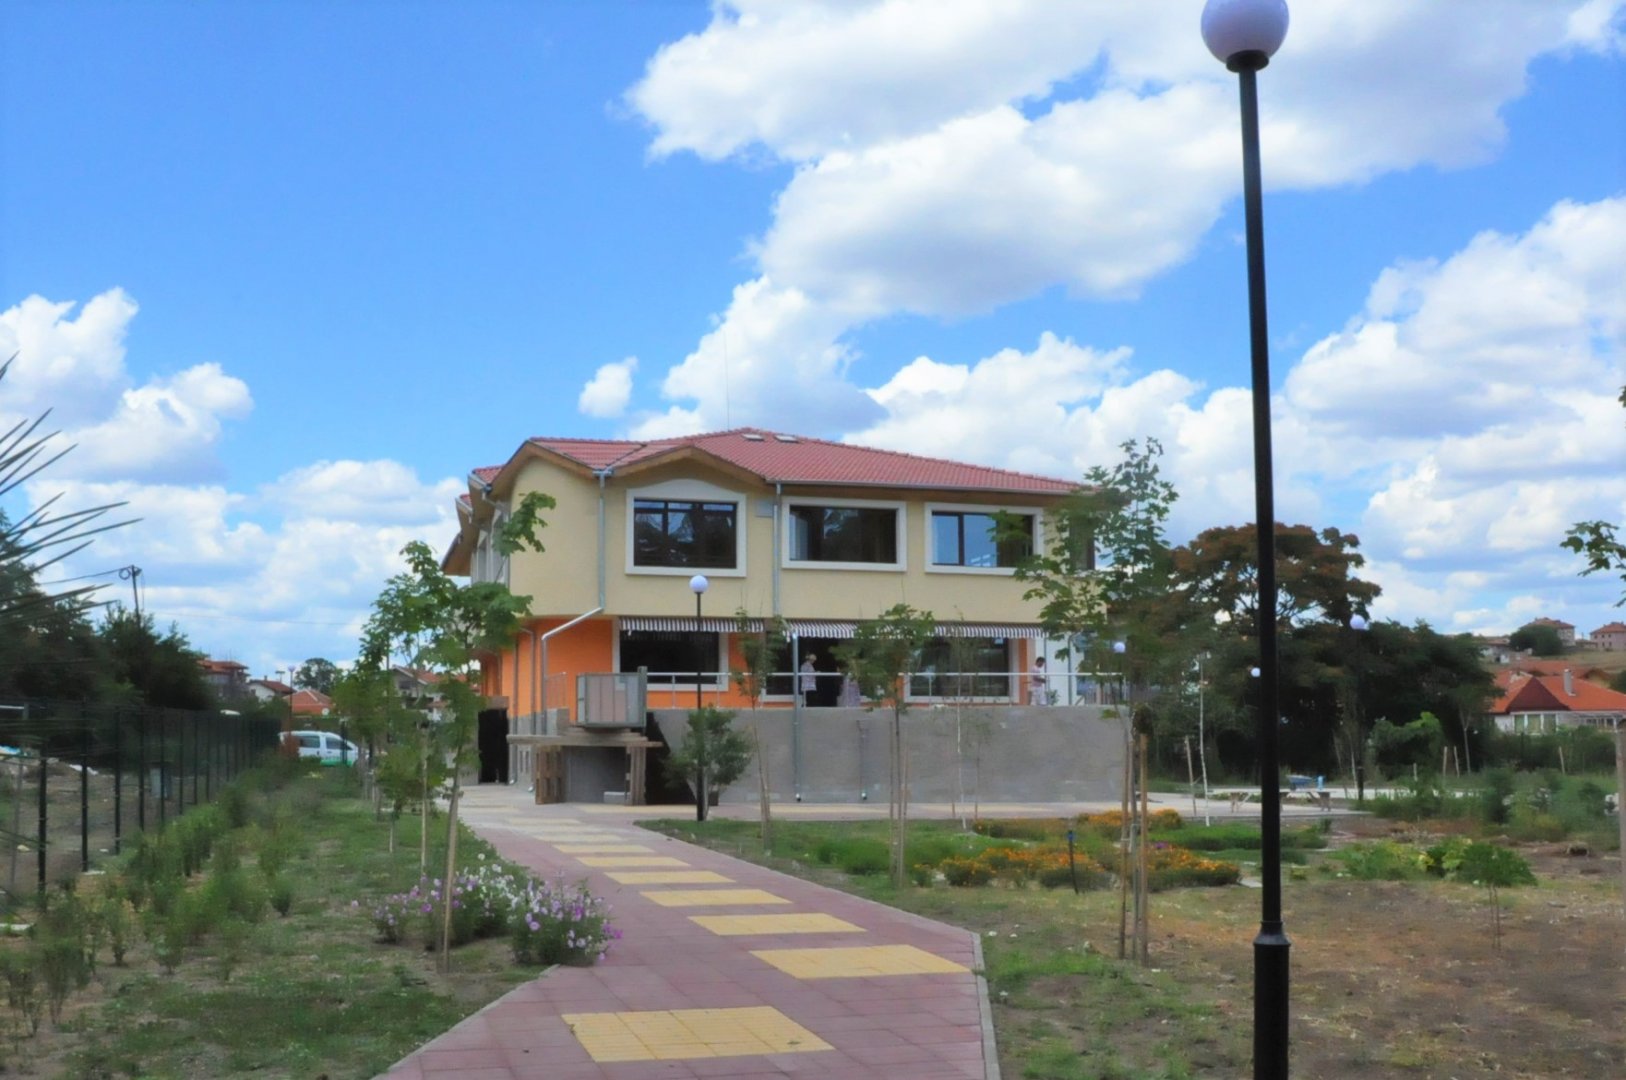 Децата от най-новия квартал на Бургас се местят в модерна детска градина  - E-Burgas.com